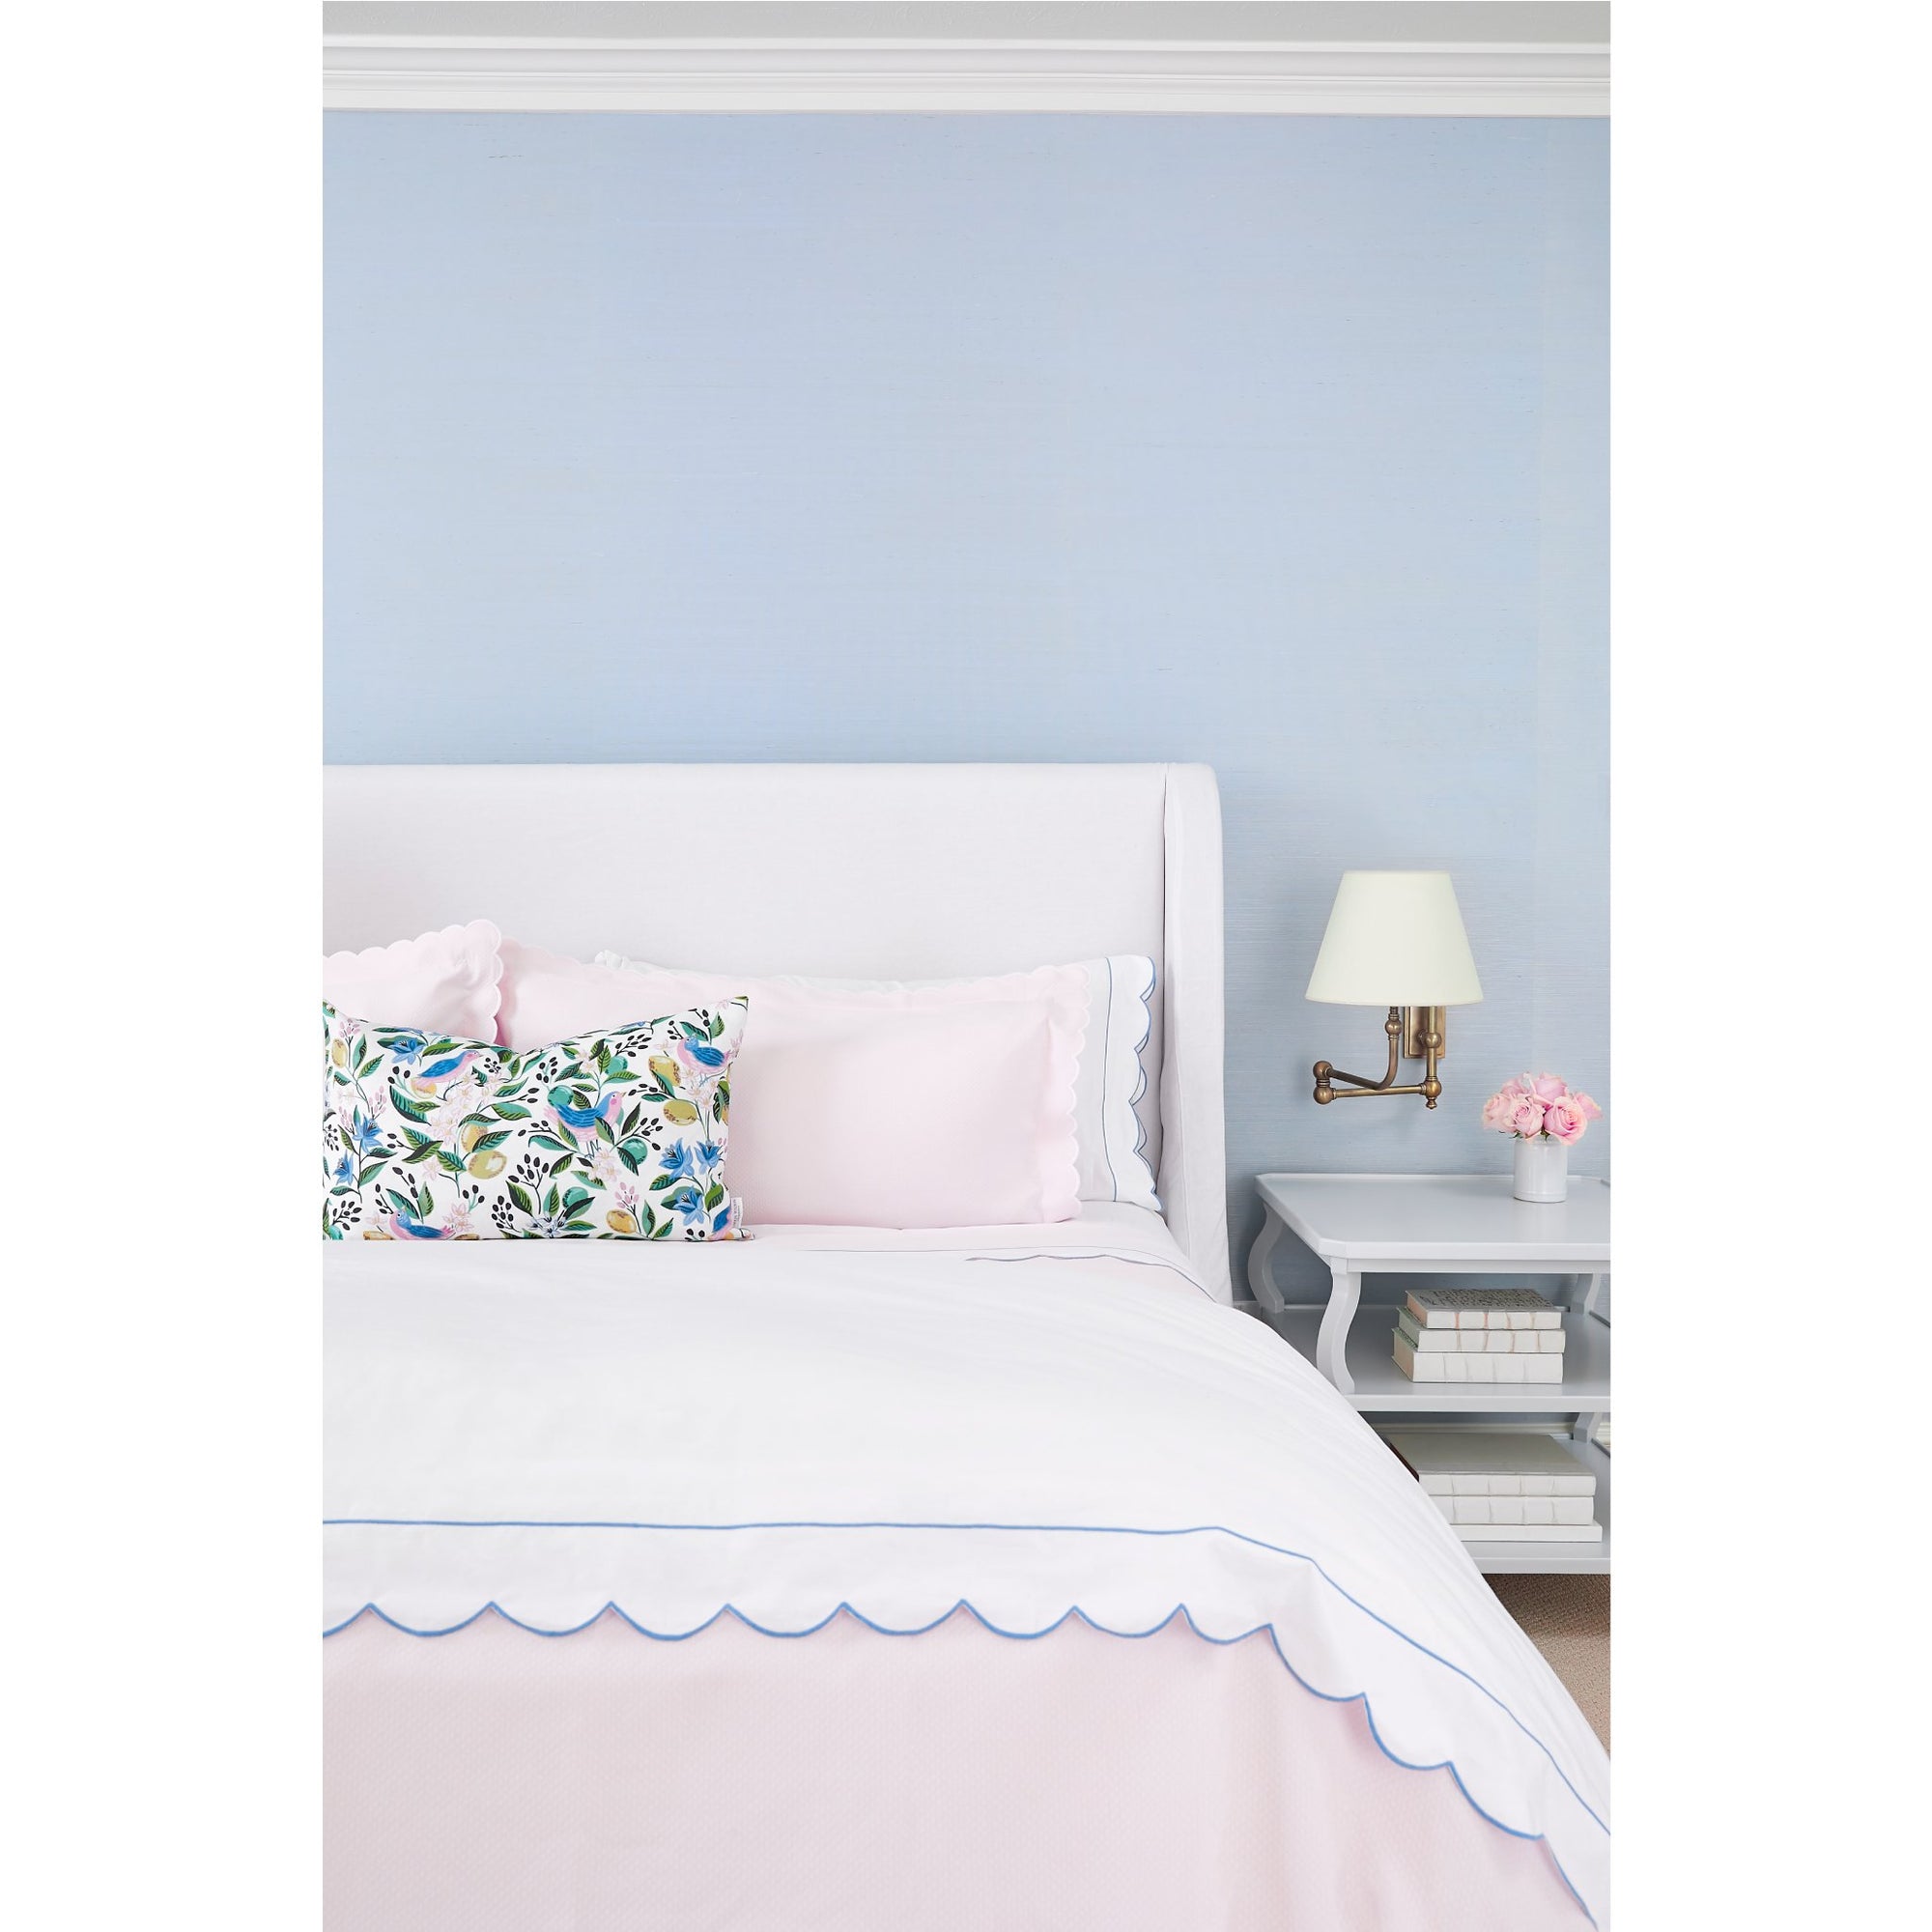 Blue Scalloped Edge Matouk Butterfield Duvet Cover on Bed